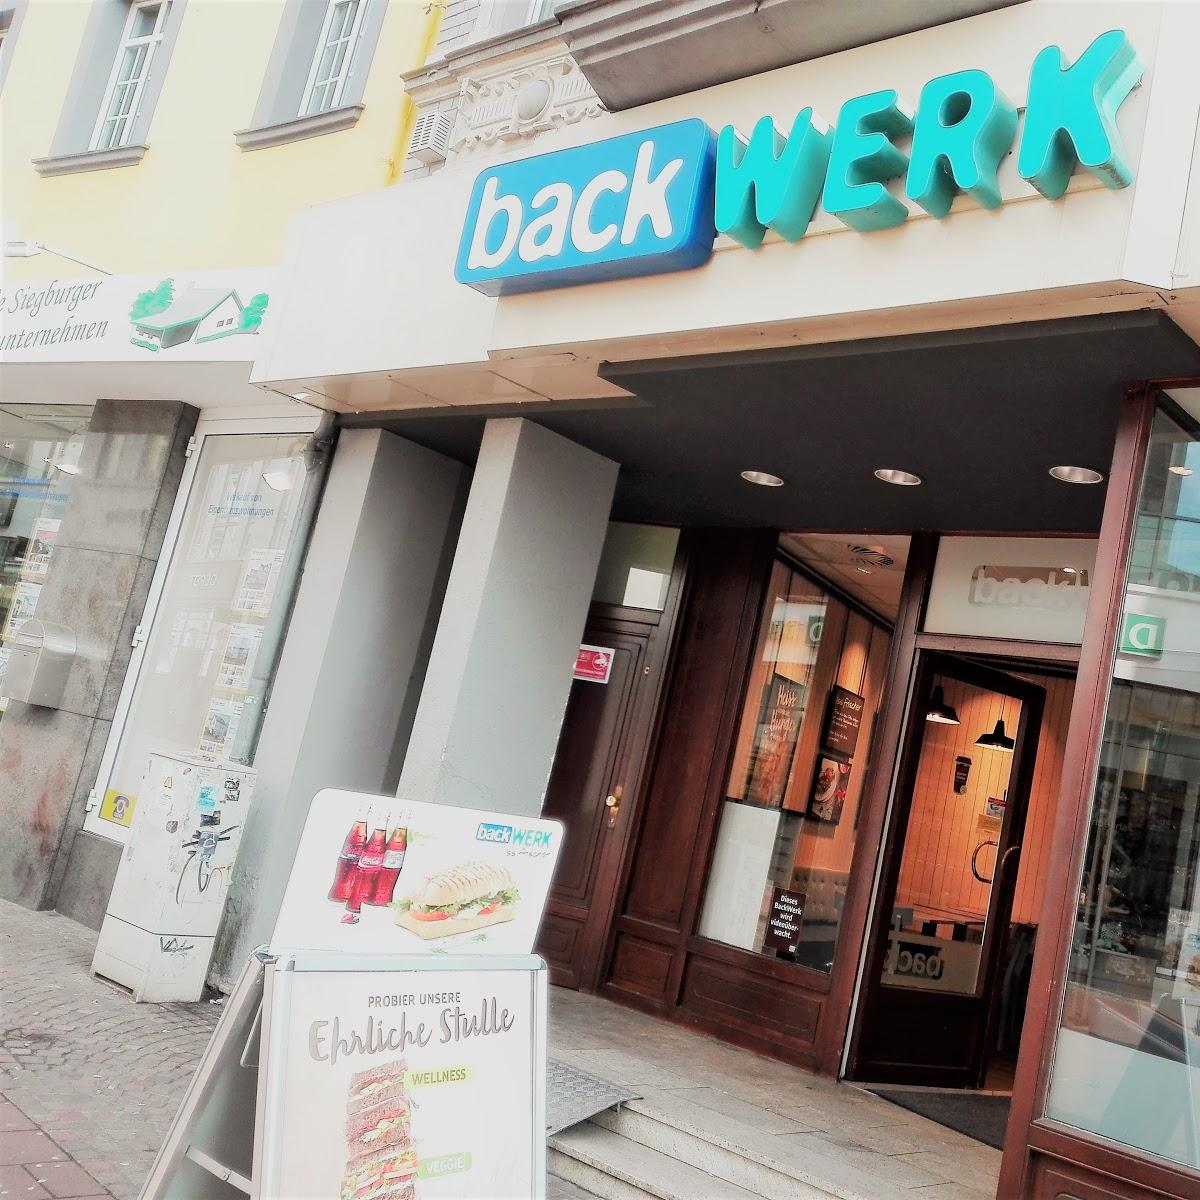 Restaurant "BackWerk" in Siegburg